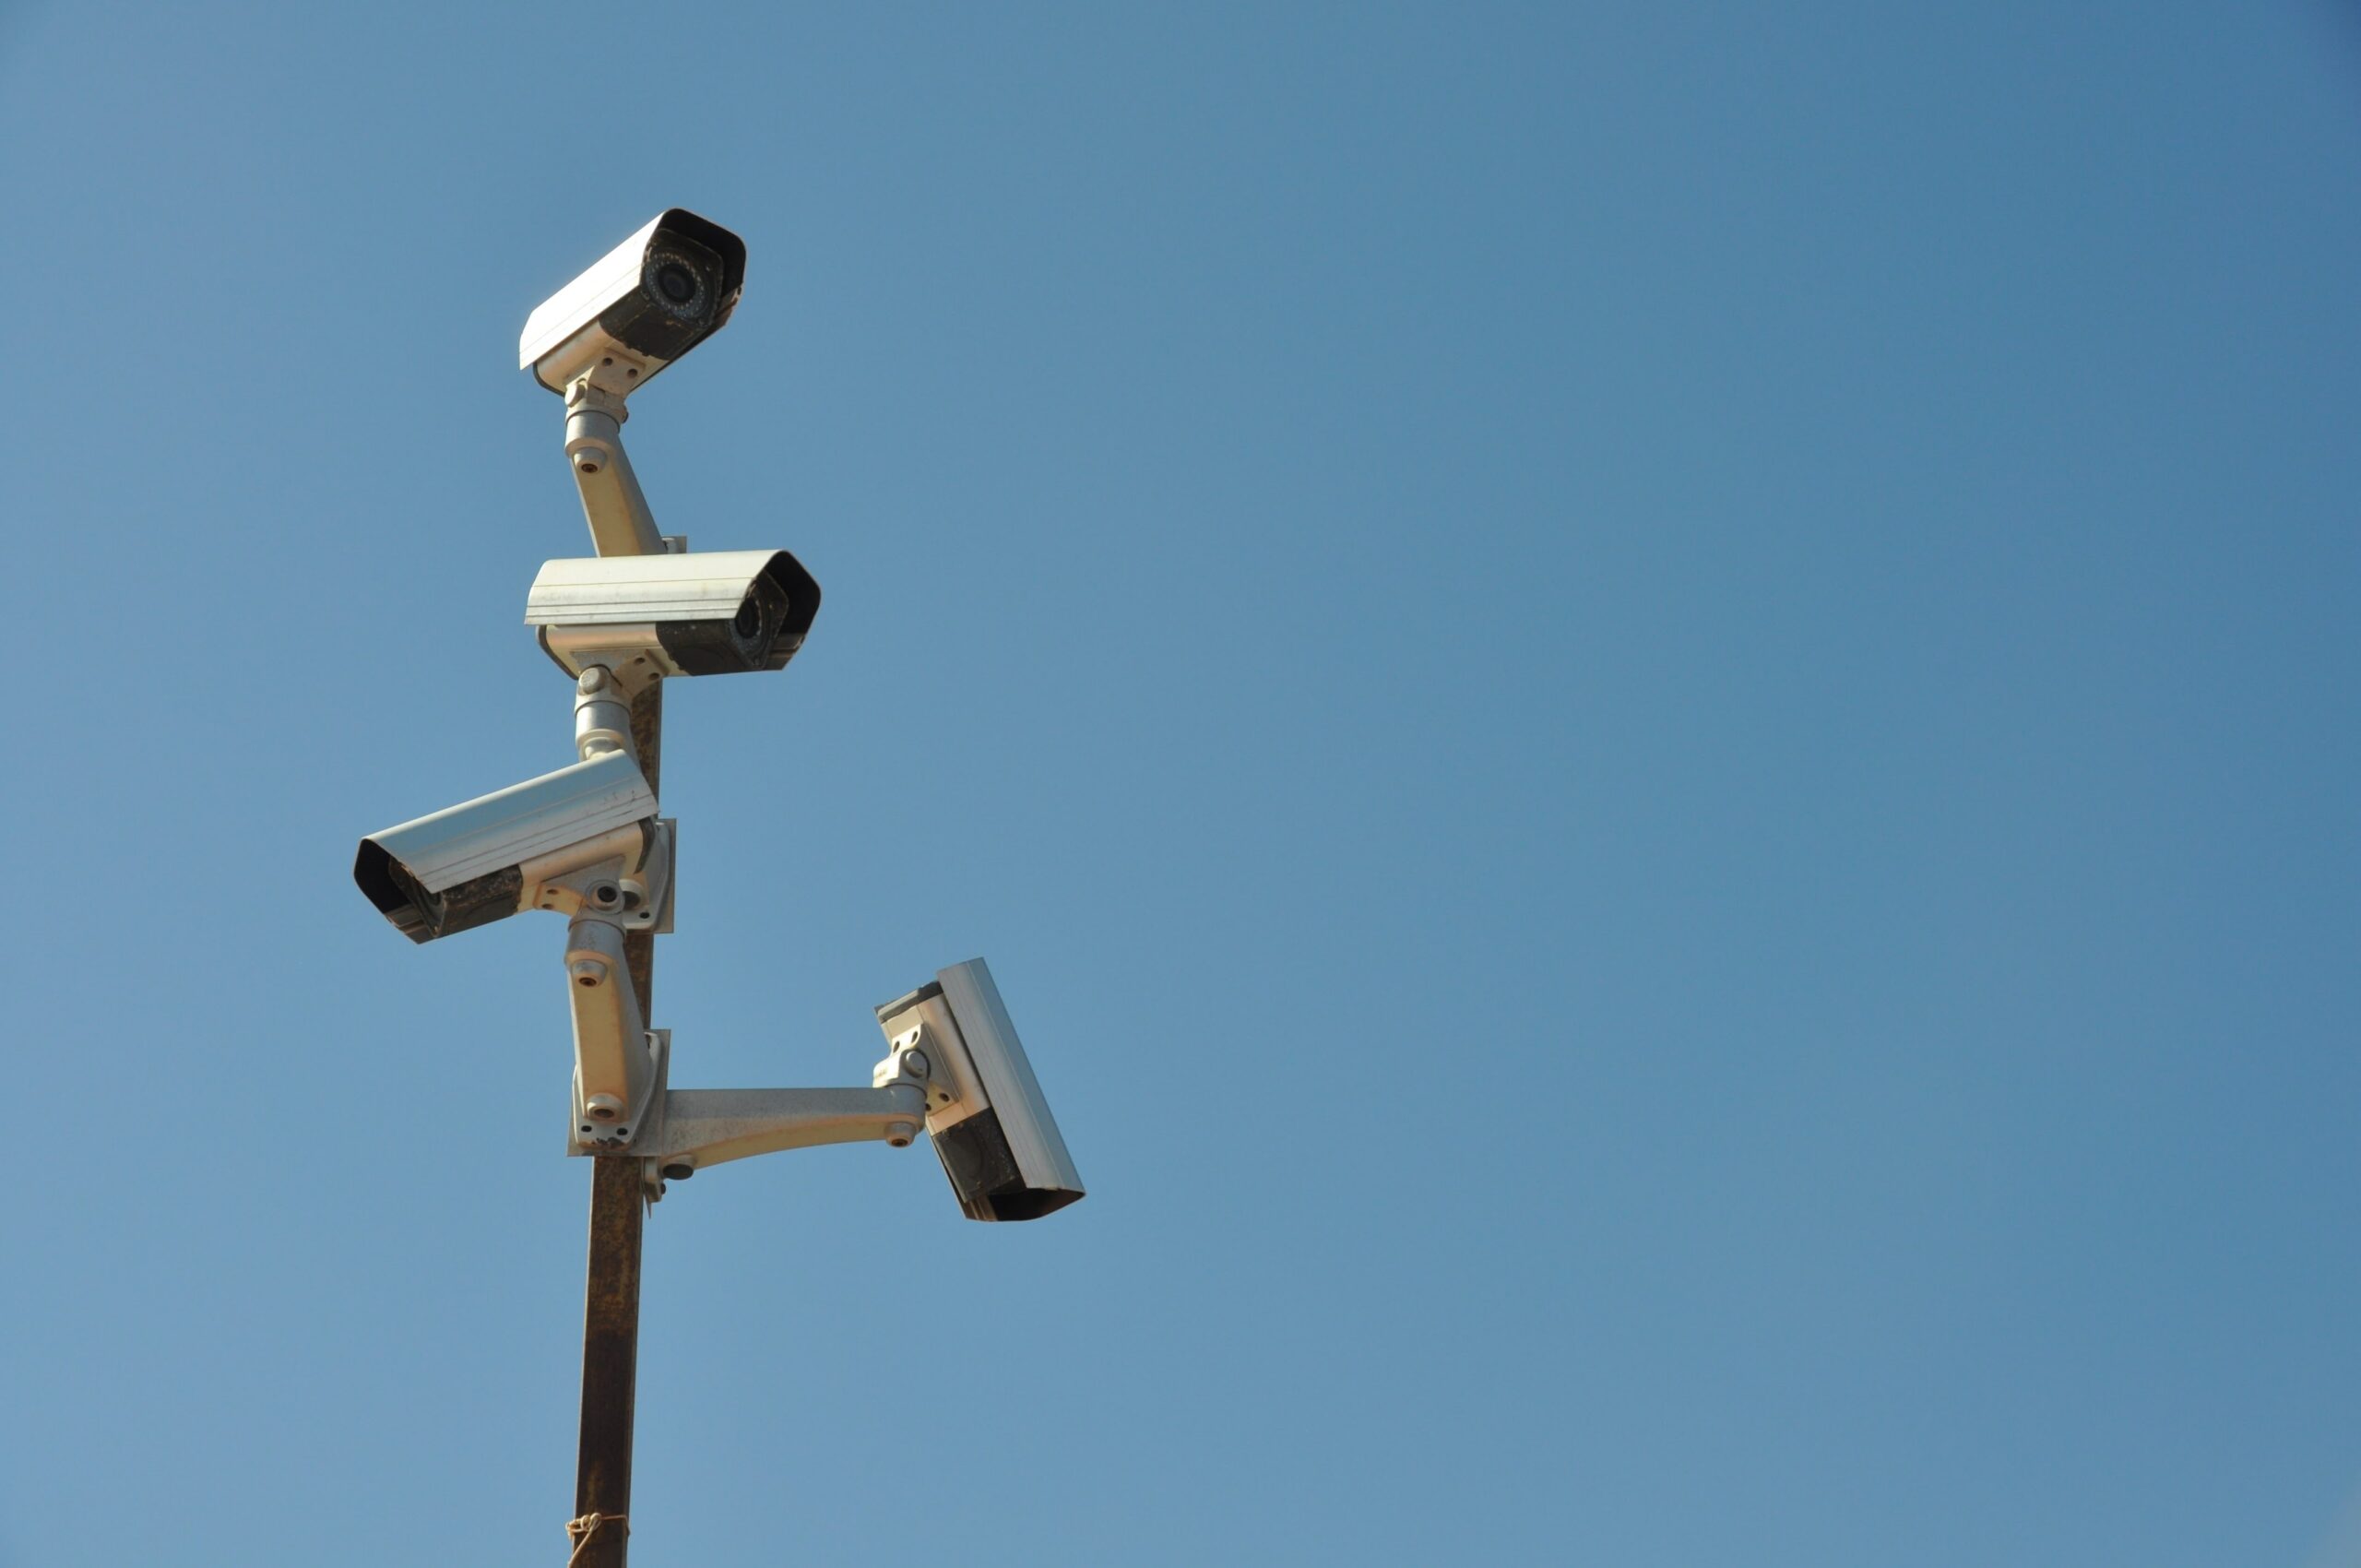 Surveillance cameras. (Image: Jürgen Jester/Unsplash)